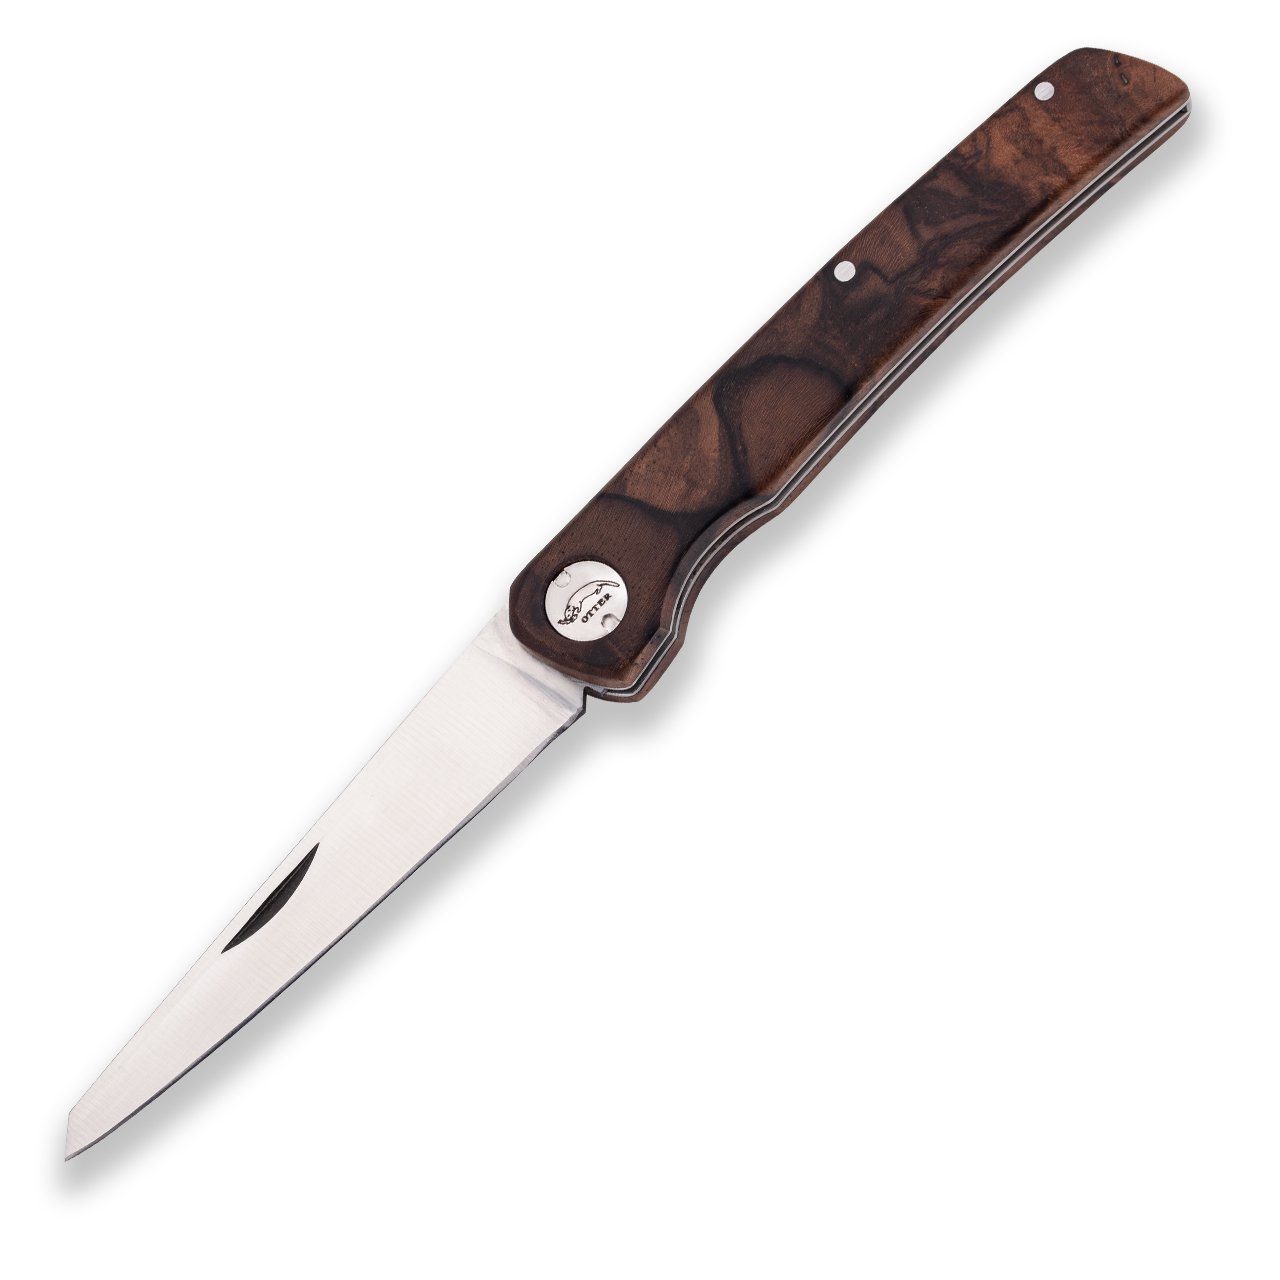 Otter Messer Taschenmesser York Wurzelwalnuss - Gentleman Taschenmesser, Klinge rostfrei, Slipjoint | Taschenmesser